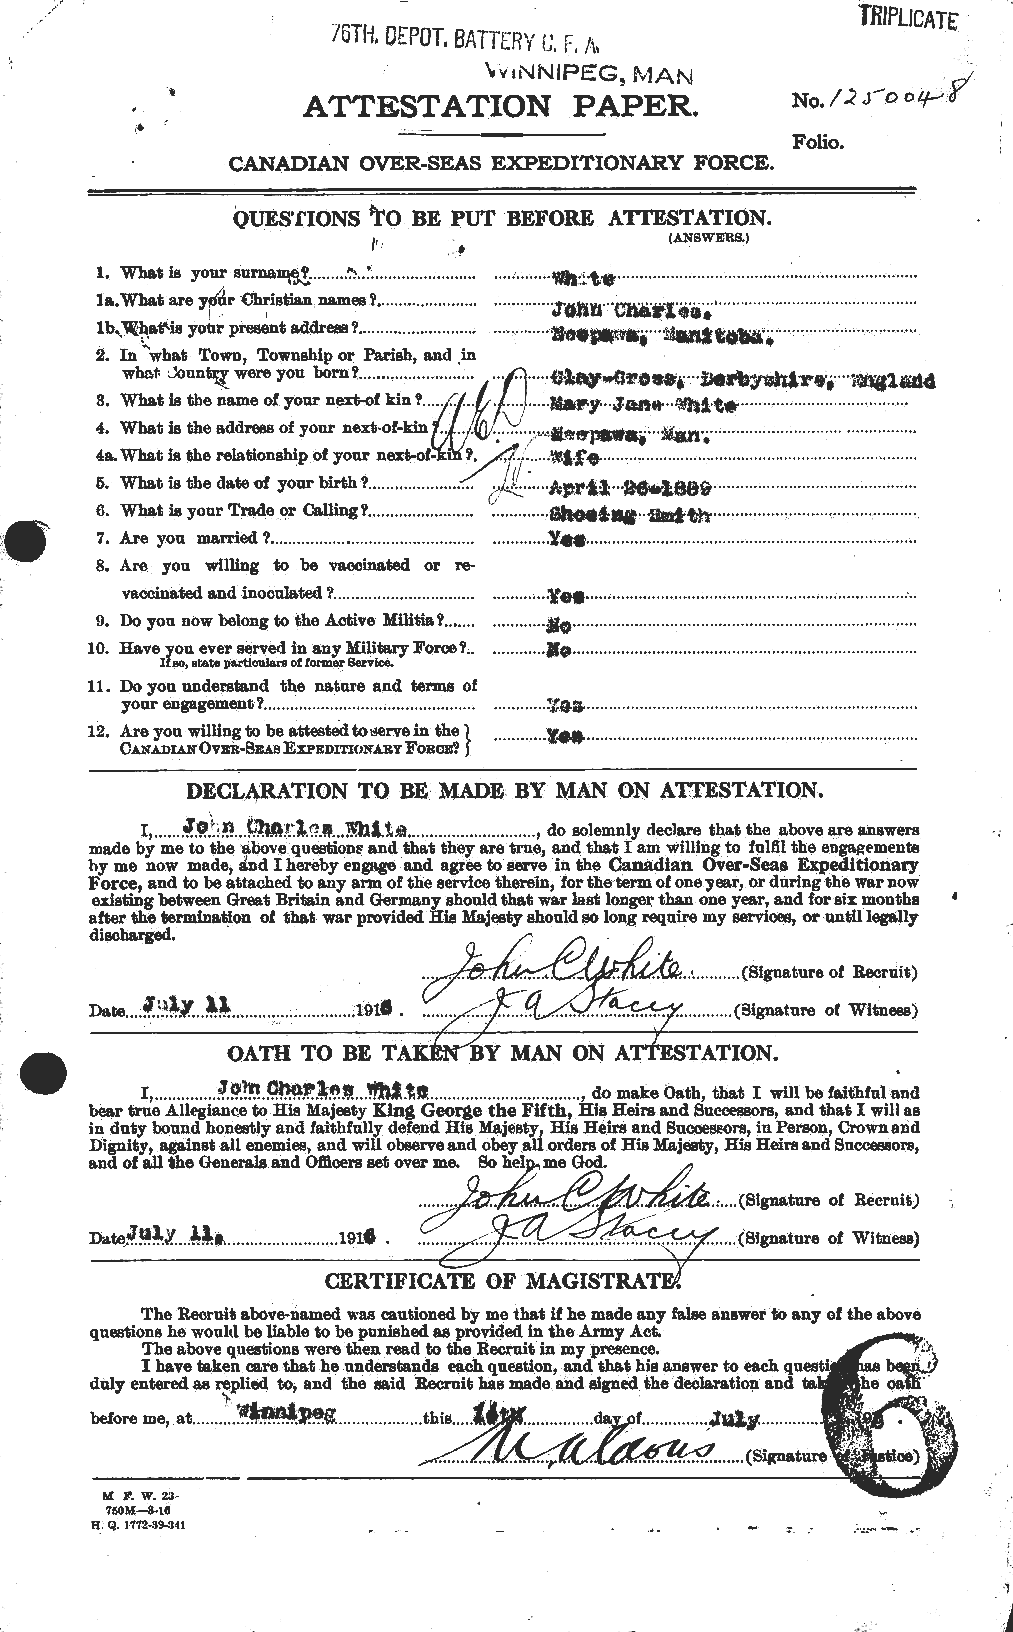 Dossiers du Personnel de la Première Guerre mondiale - CEC 671547a